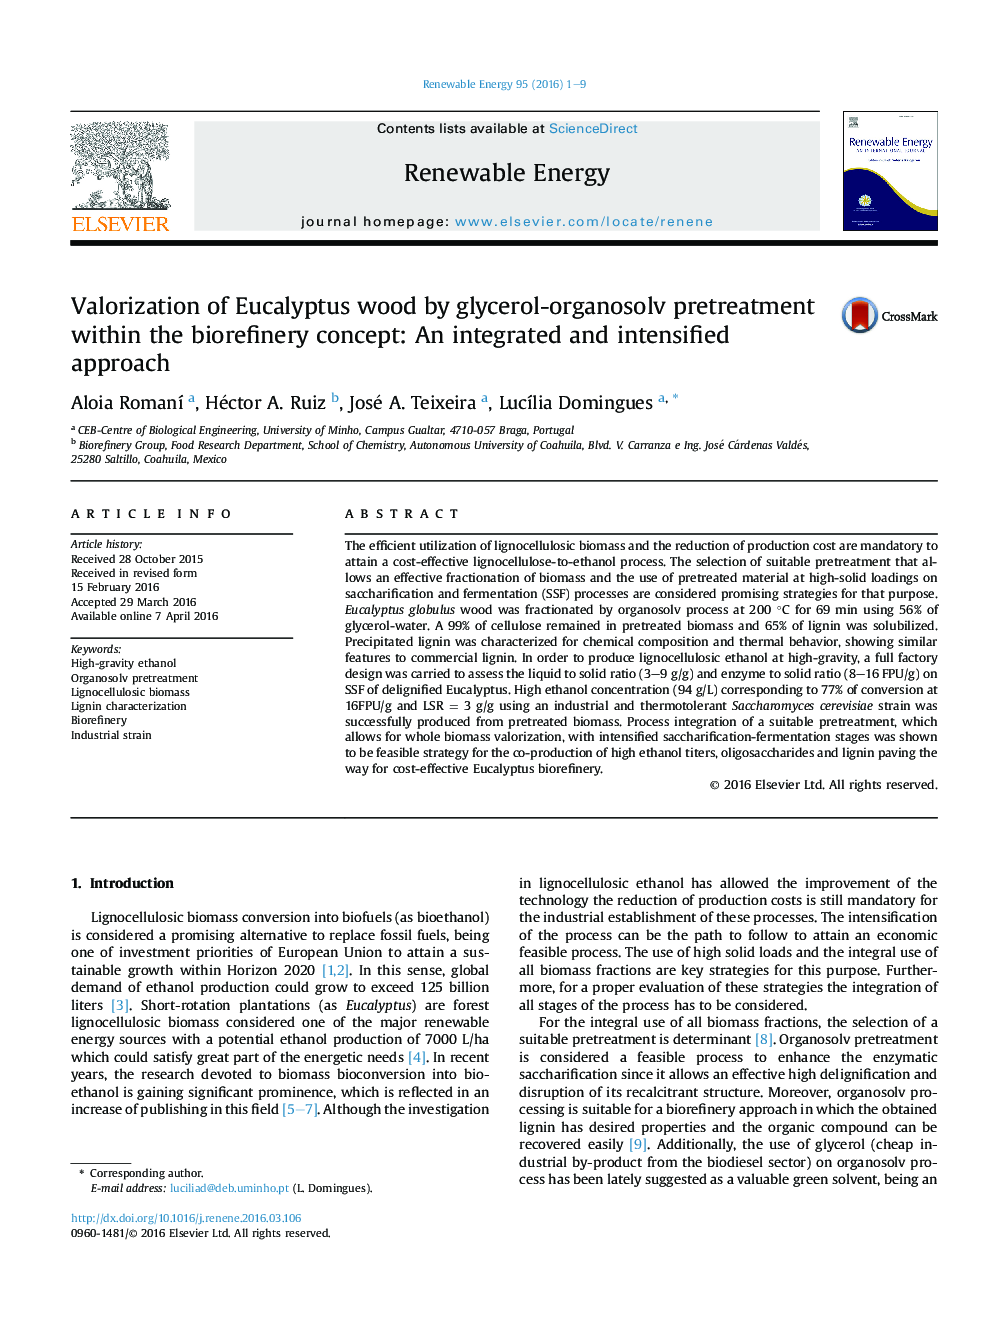 ارزیابی چوب اکالیپتوس با استفاده از پیشگیری از گلیسرول-ارگانواسولف در مفهوم بیورفینشن: رویکرد یکپارچه و تشدید شده 